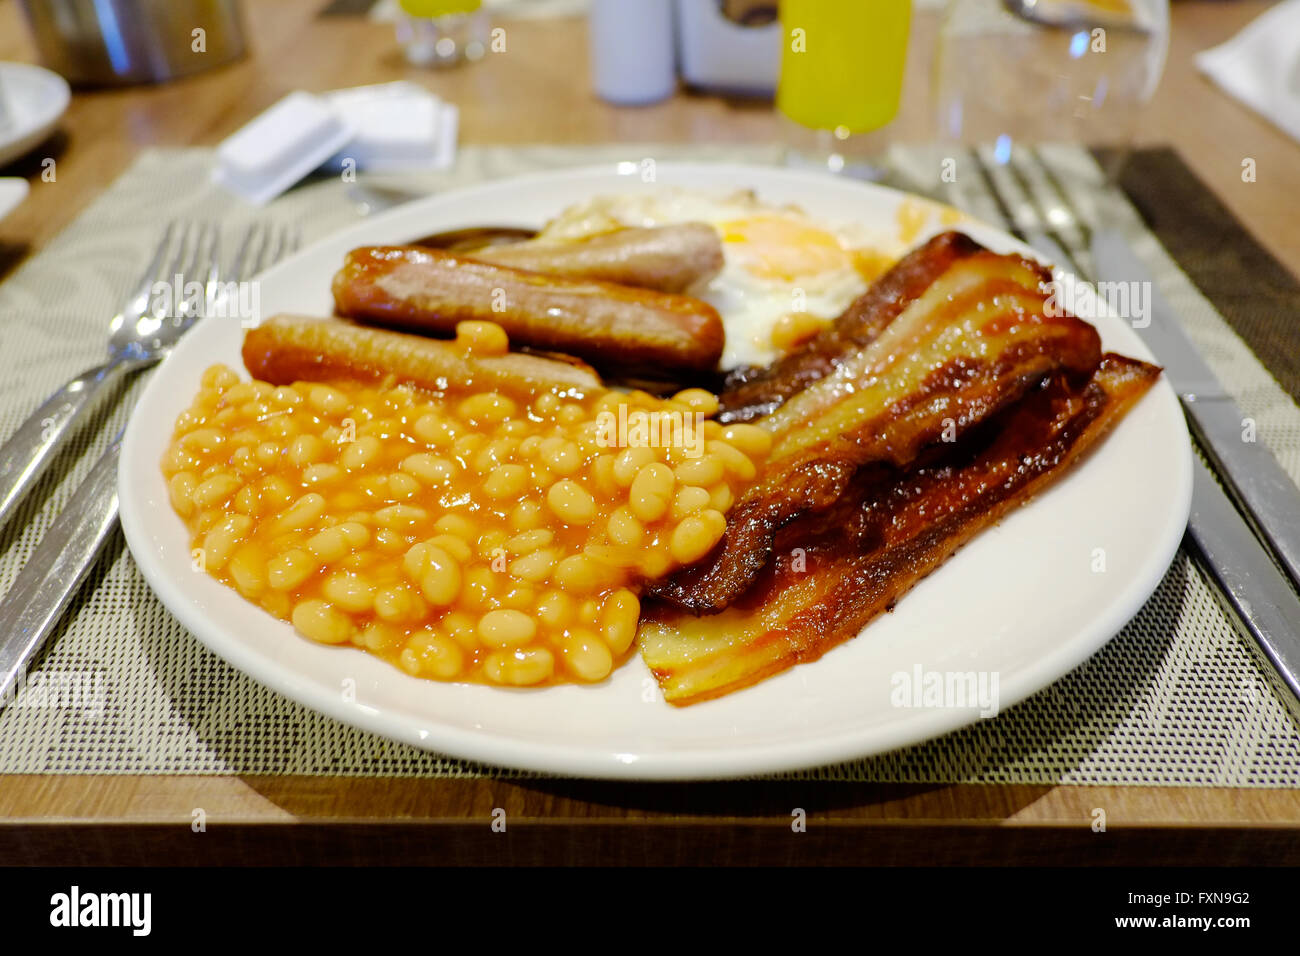 Ein traditionelles englisches Frühstück serviert auf einem Hotel Tisch gebraten Stockfoto